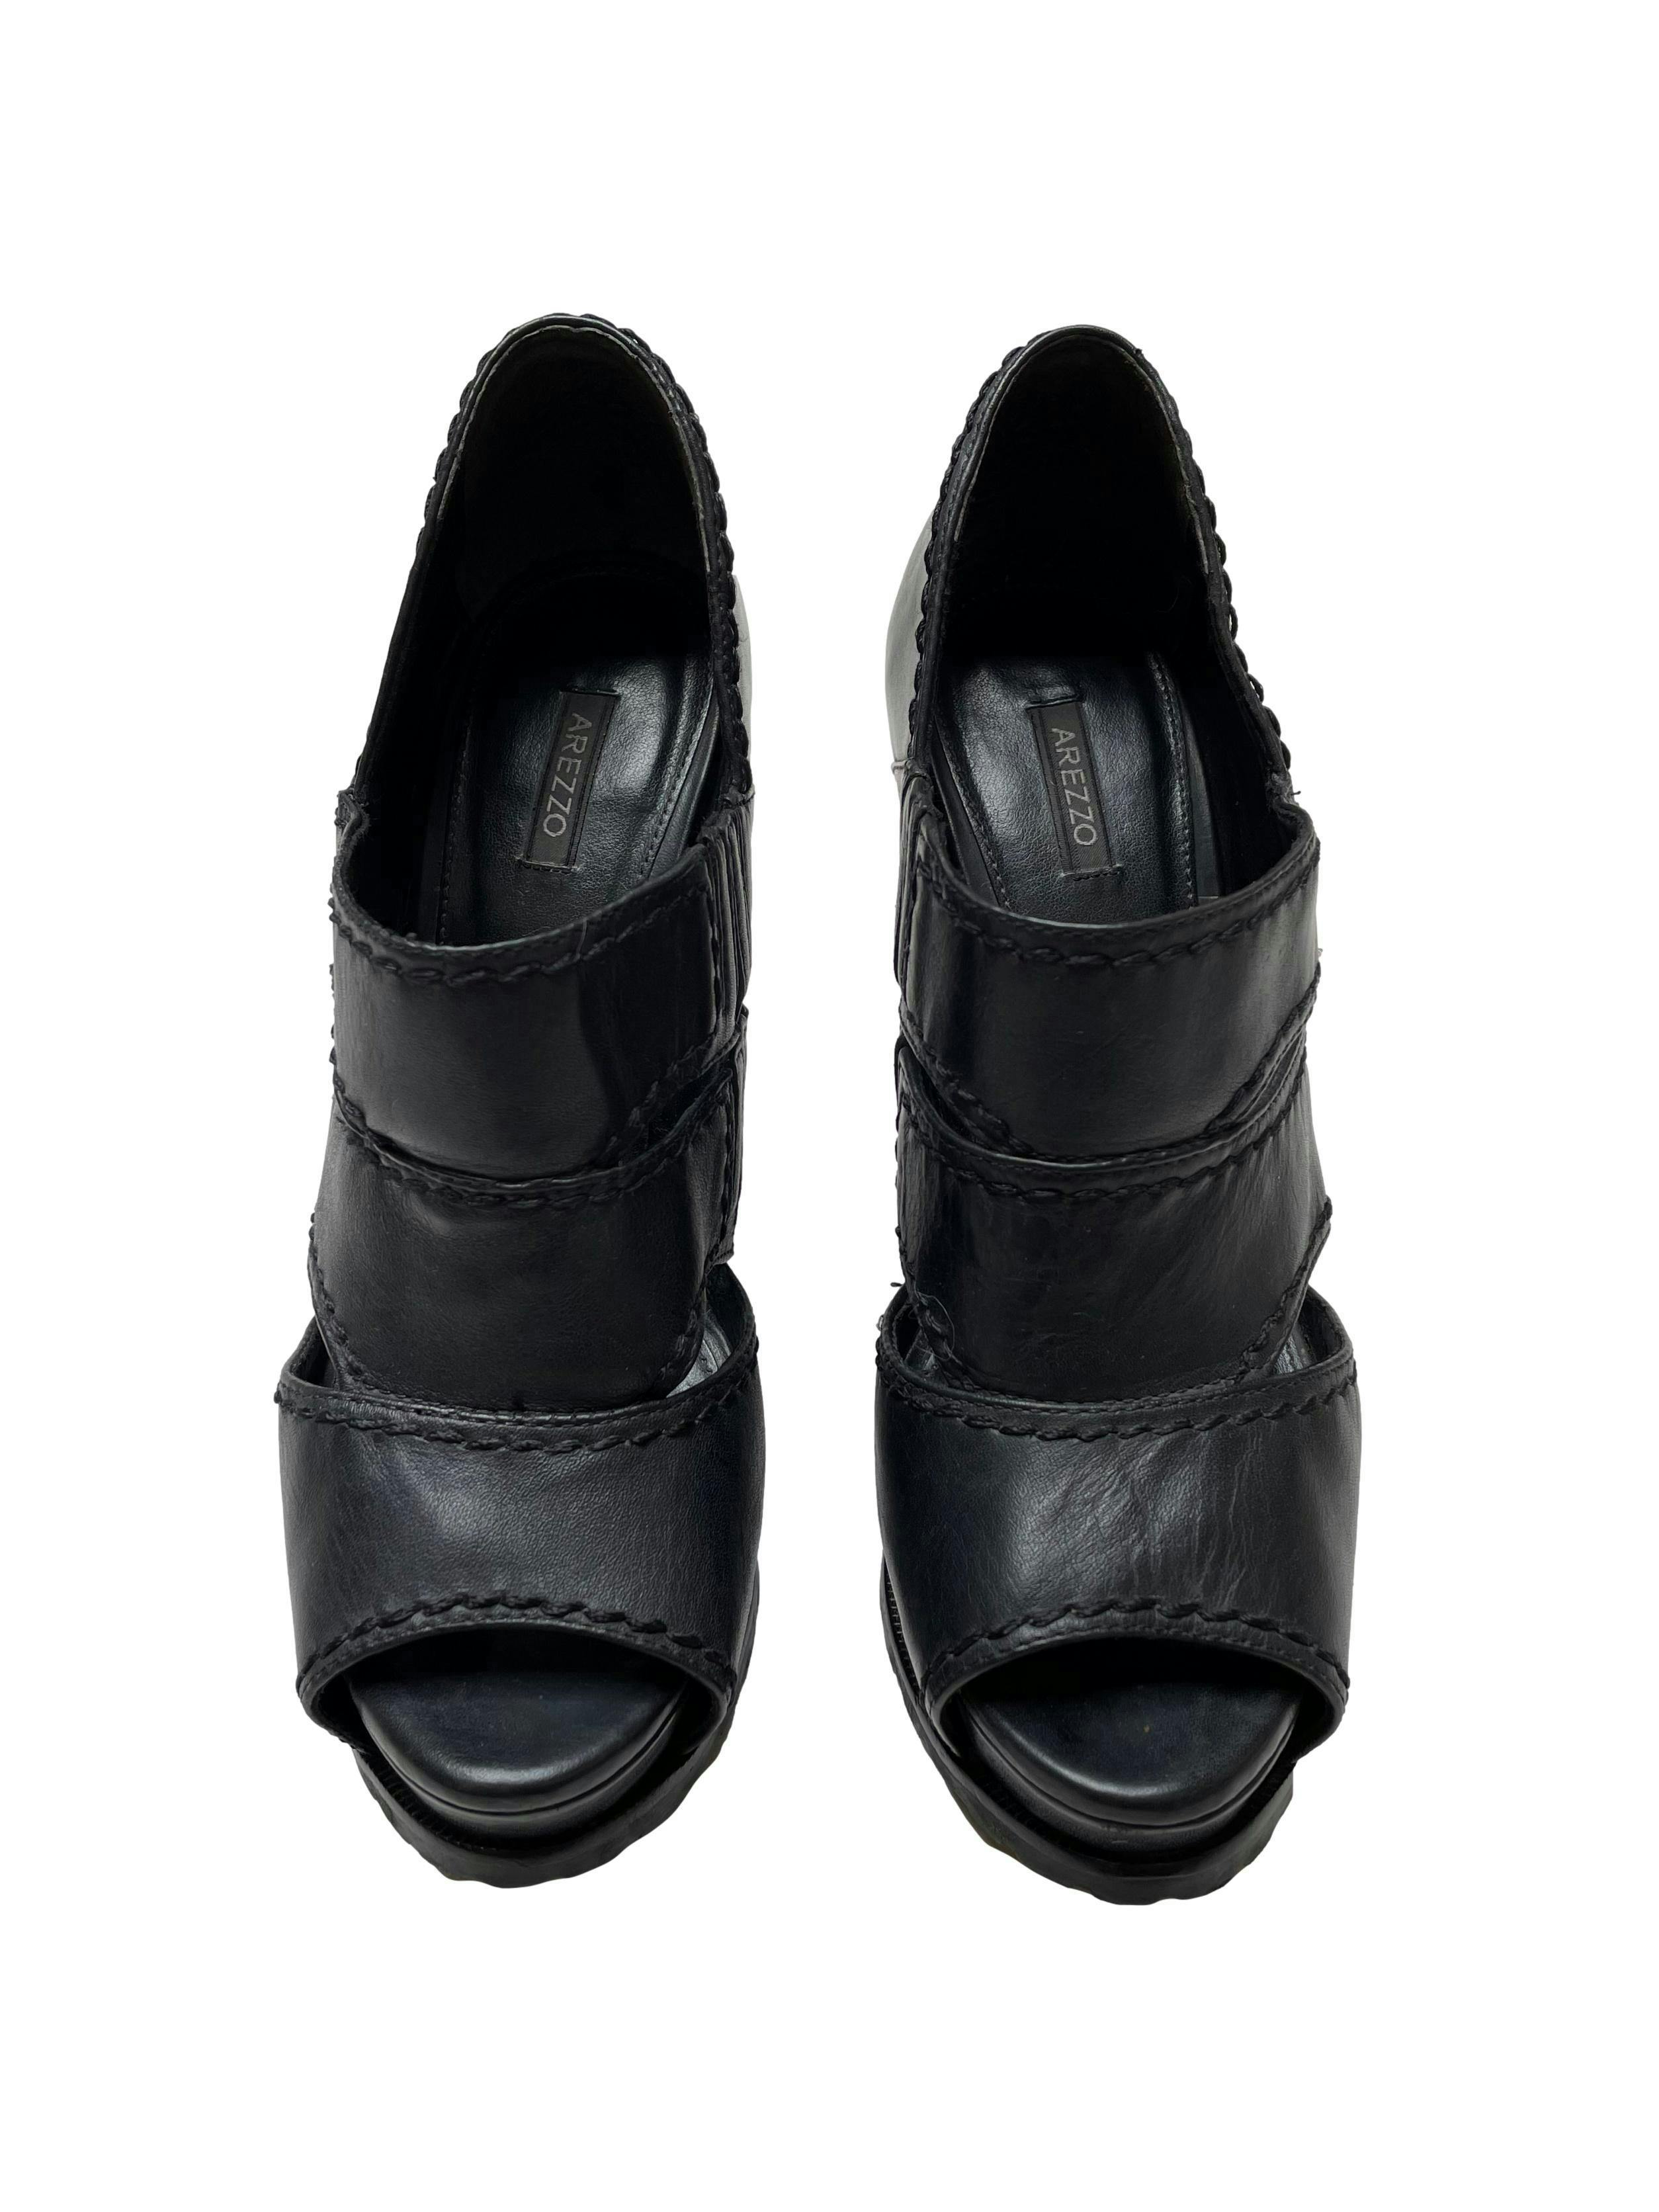 Zapatos Arezzo 100% cuero negro, modelo peep toe con aberturas laterales en el empeine, taco 12cm plataforma 4cm. Estado 9.5/10. 